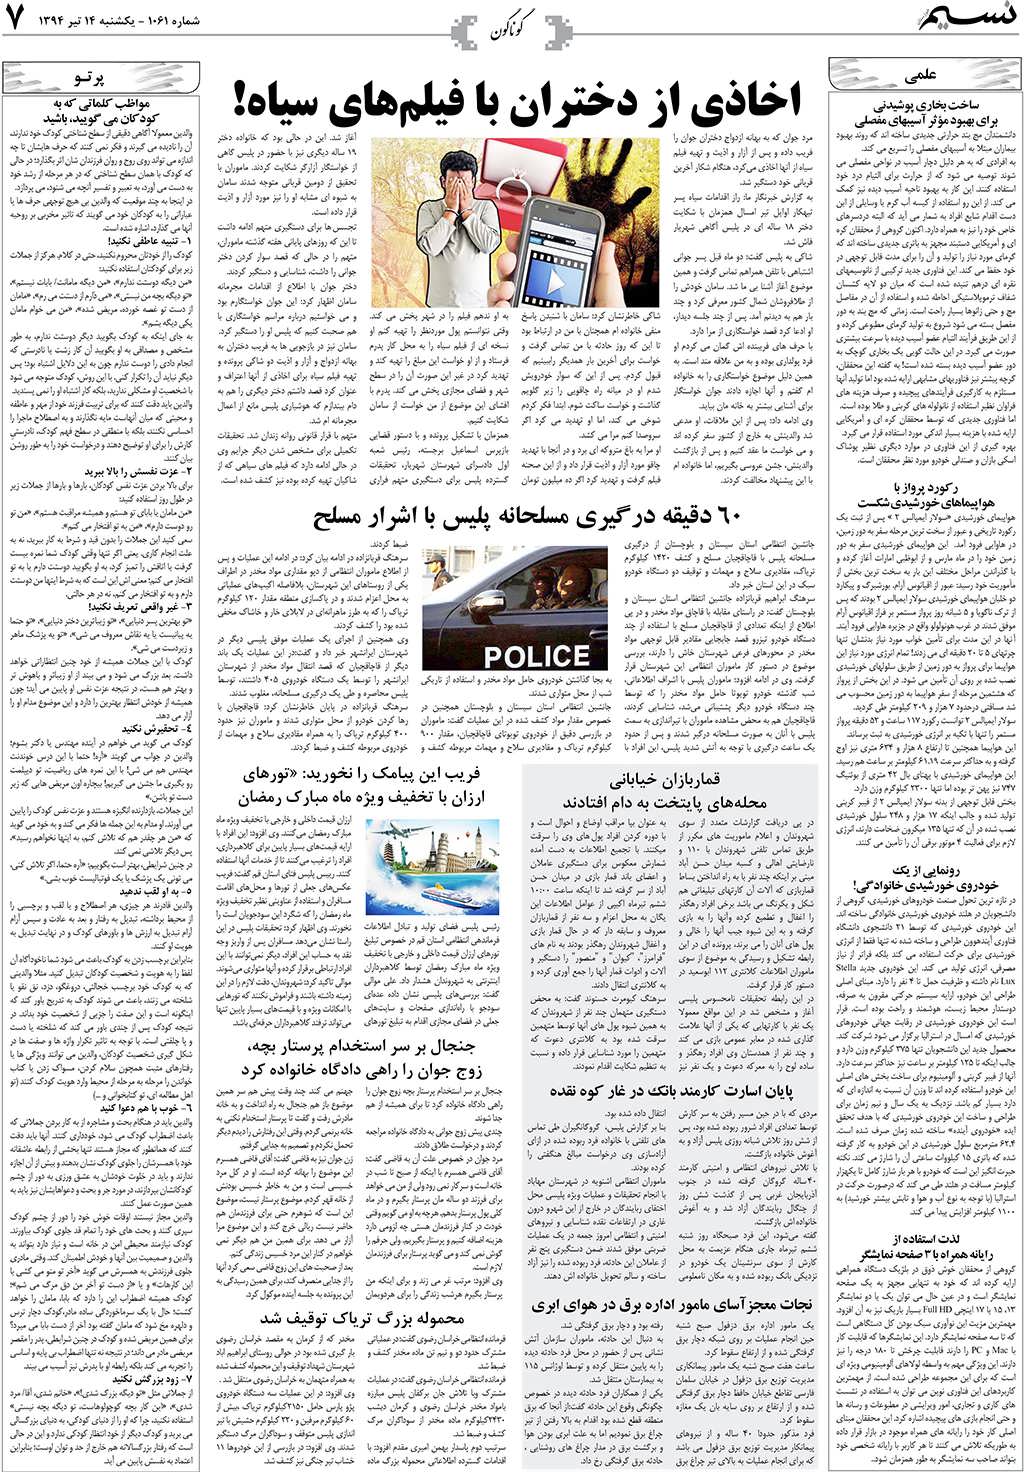 صفحه گوناگون روزنامه نسیم شماره 1061